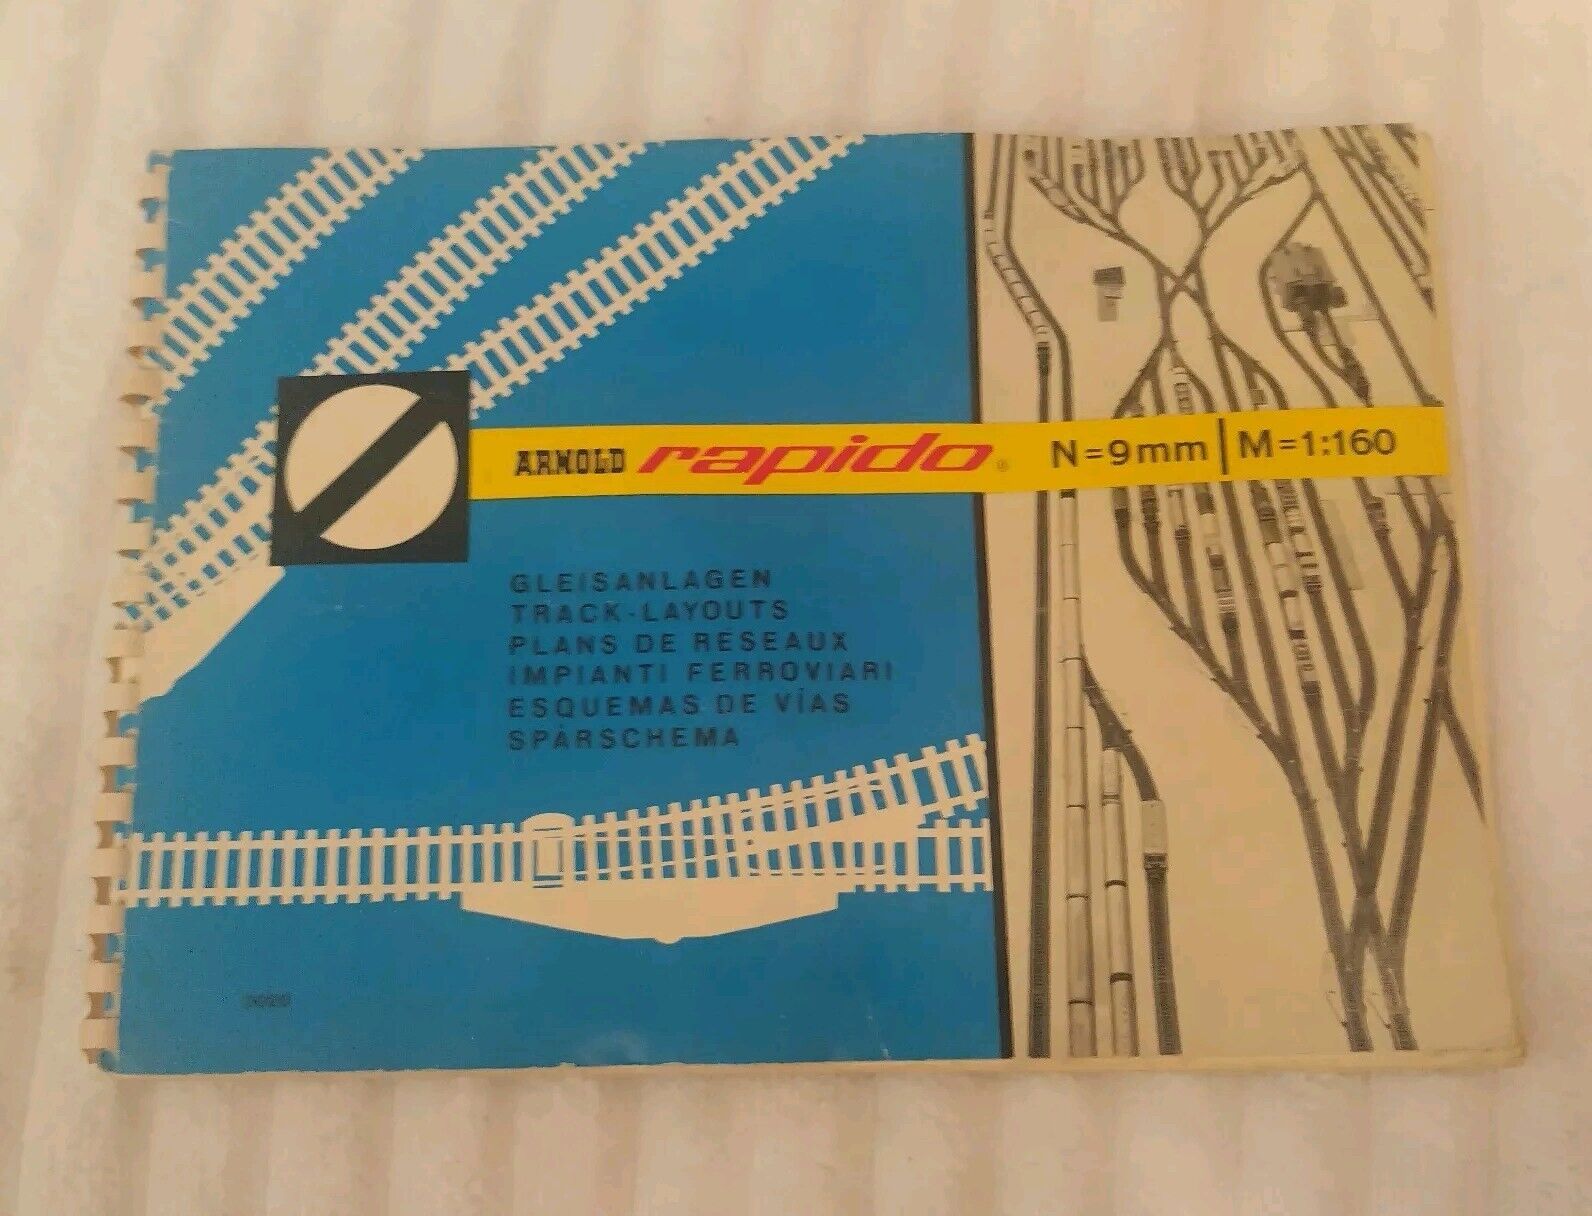 1968 Arnold Rapido N-Gauge 9 mm 1:160 Track Layout Spiral Bound Book